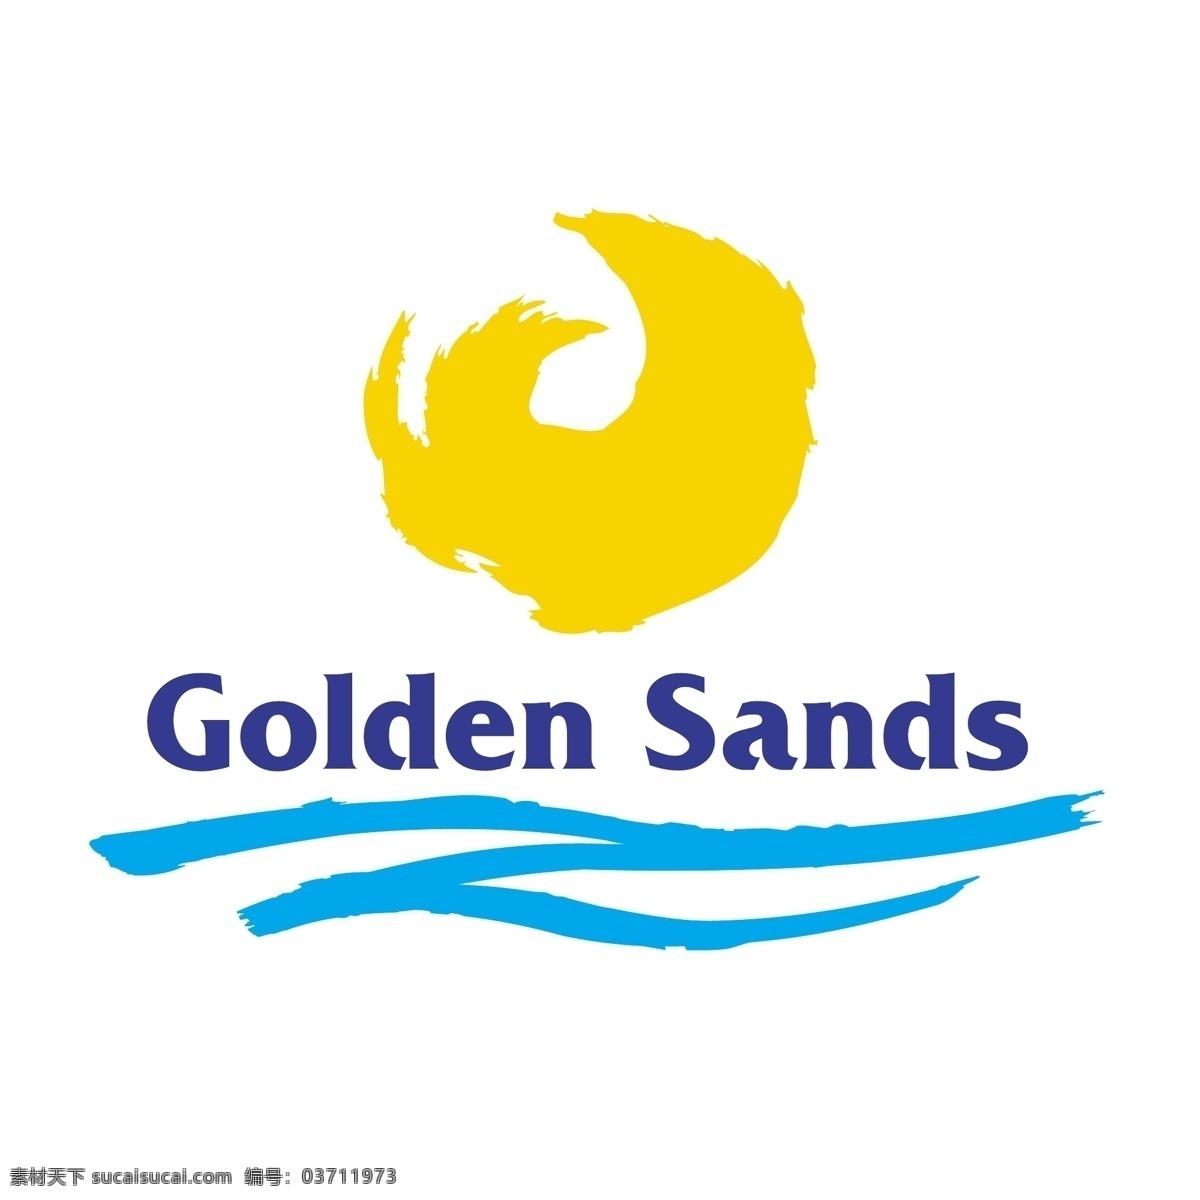 金沙 滩 标识 公司 免费 品牌 品牌标识 商标 矢量标志下载 免费矢量标识 矢量 psd源文件 logo设计